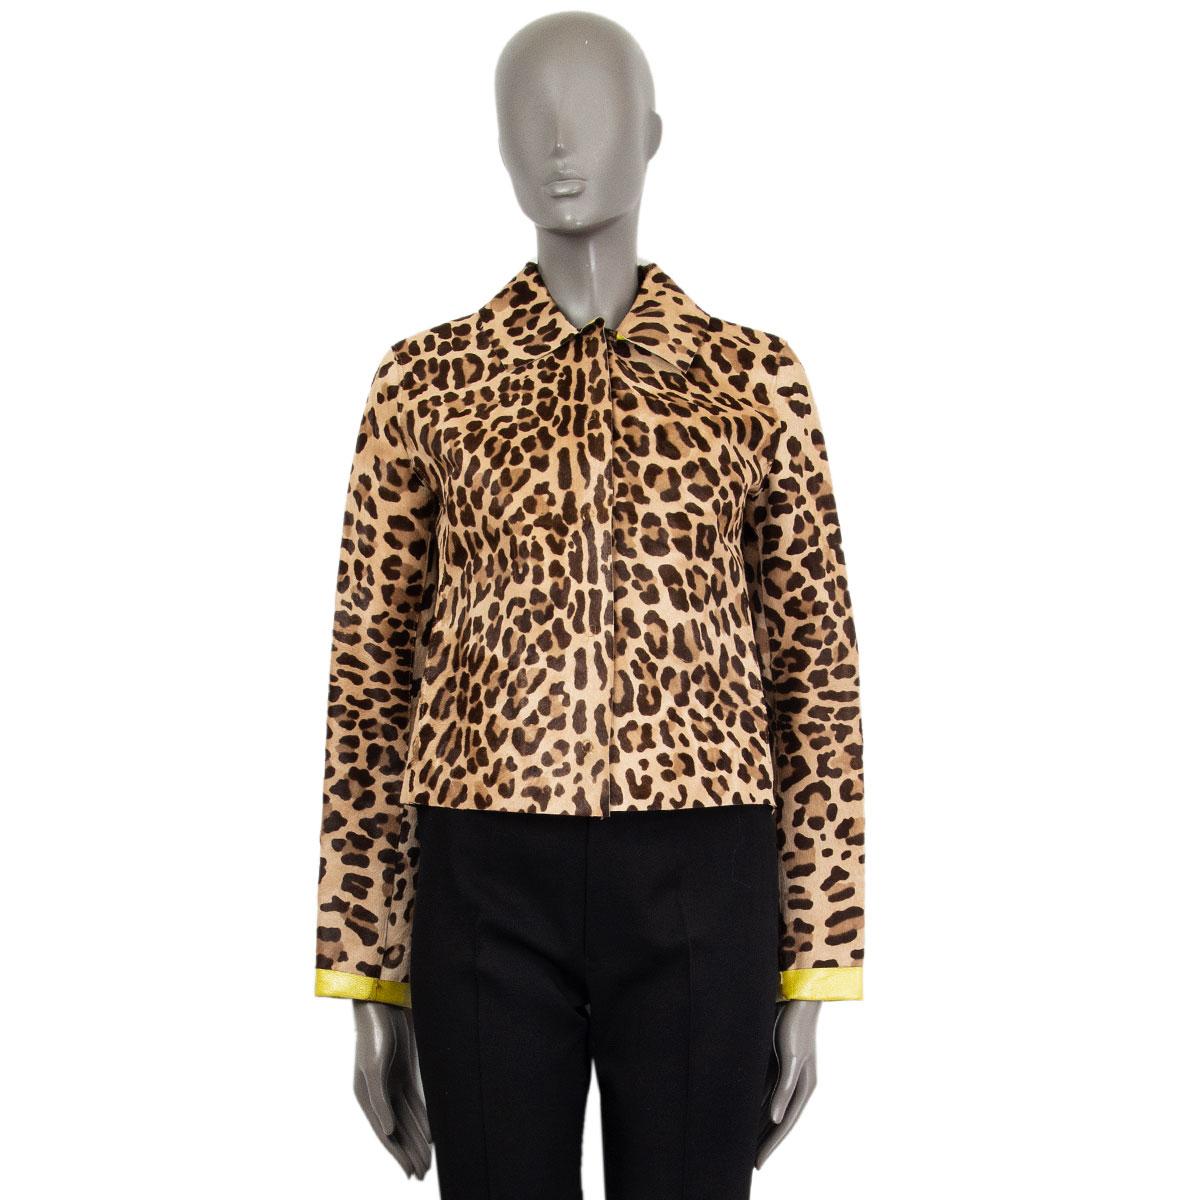 Kurze Jacke mit Leopardenmuster von Dolce & Gabbana aus braunem, mokkafarbenem und beigem Kalbshaar (das Etikett wurde entfernt) mit flachem Kragen. Wird auf der Vorderseite mit Druckknöpfen geschlossen. Das Innenleder ist neongrün und die